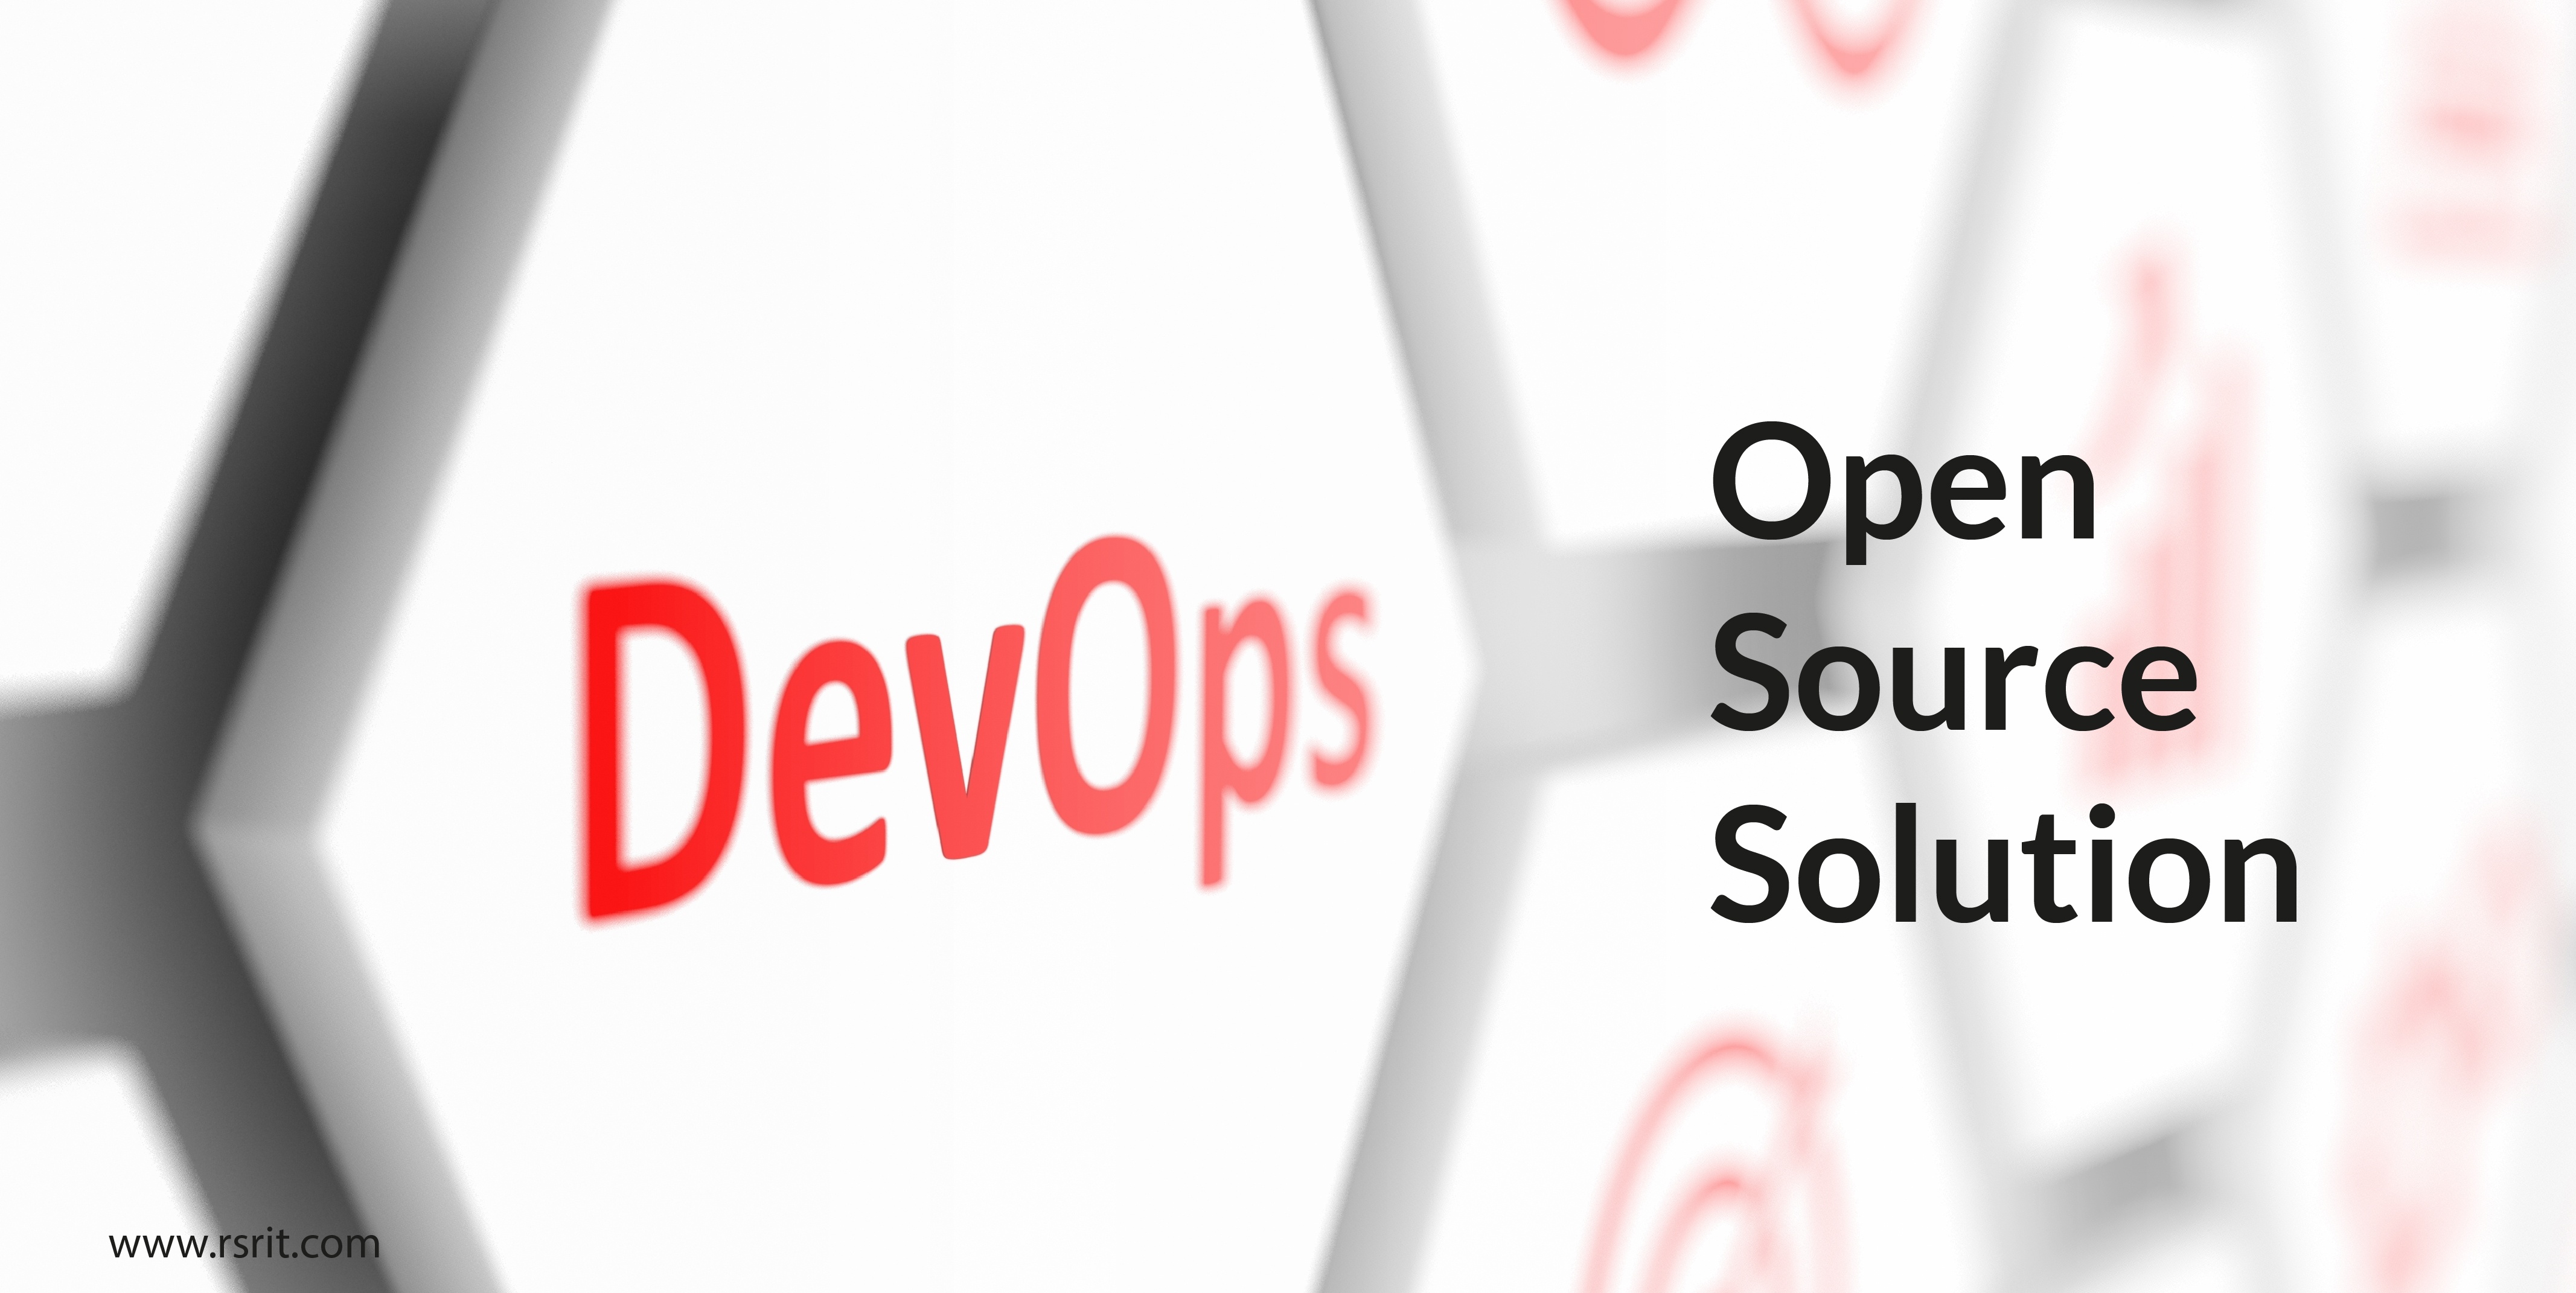 CyberArk Launches Open Source Secrets Management Solution for DevOps